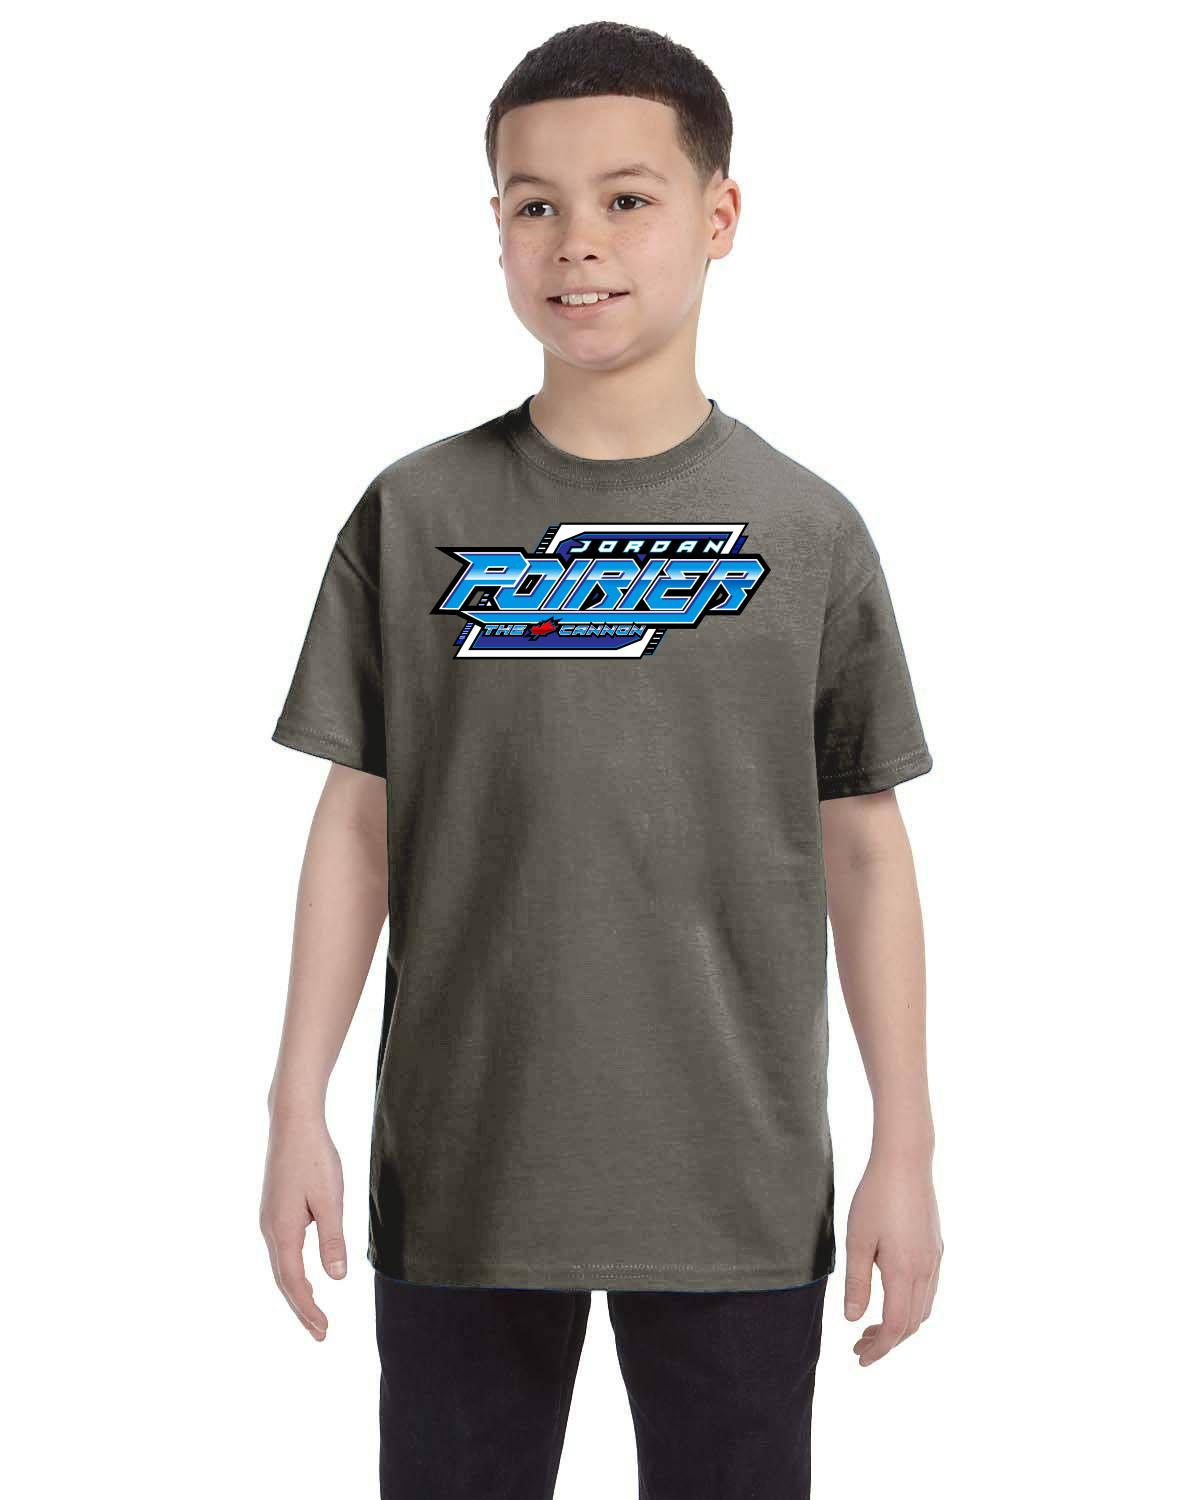 Jordan Poirier Racing 2023 Youth T-shirt